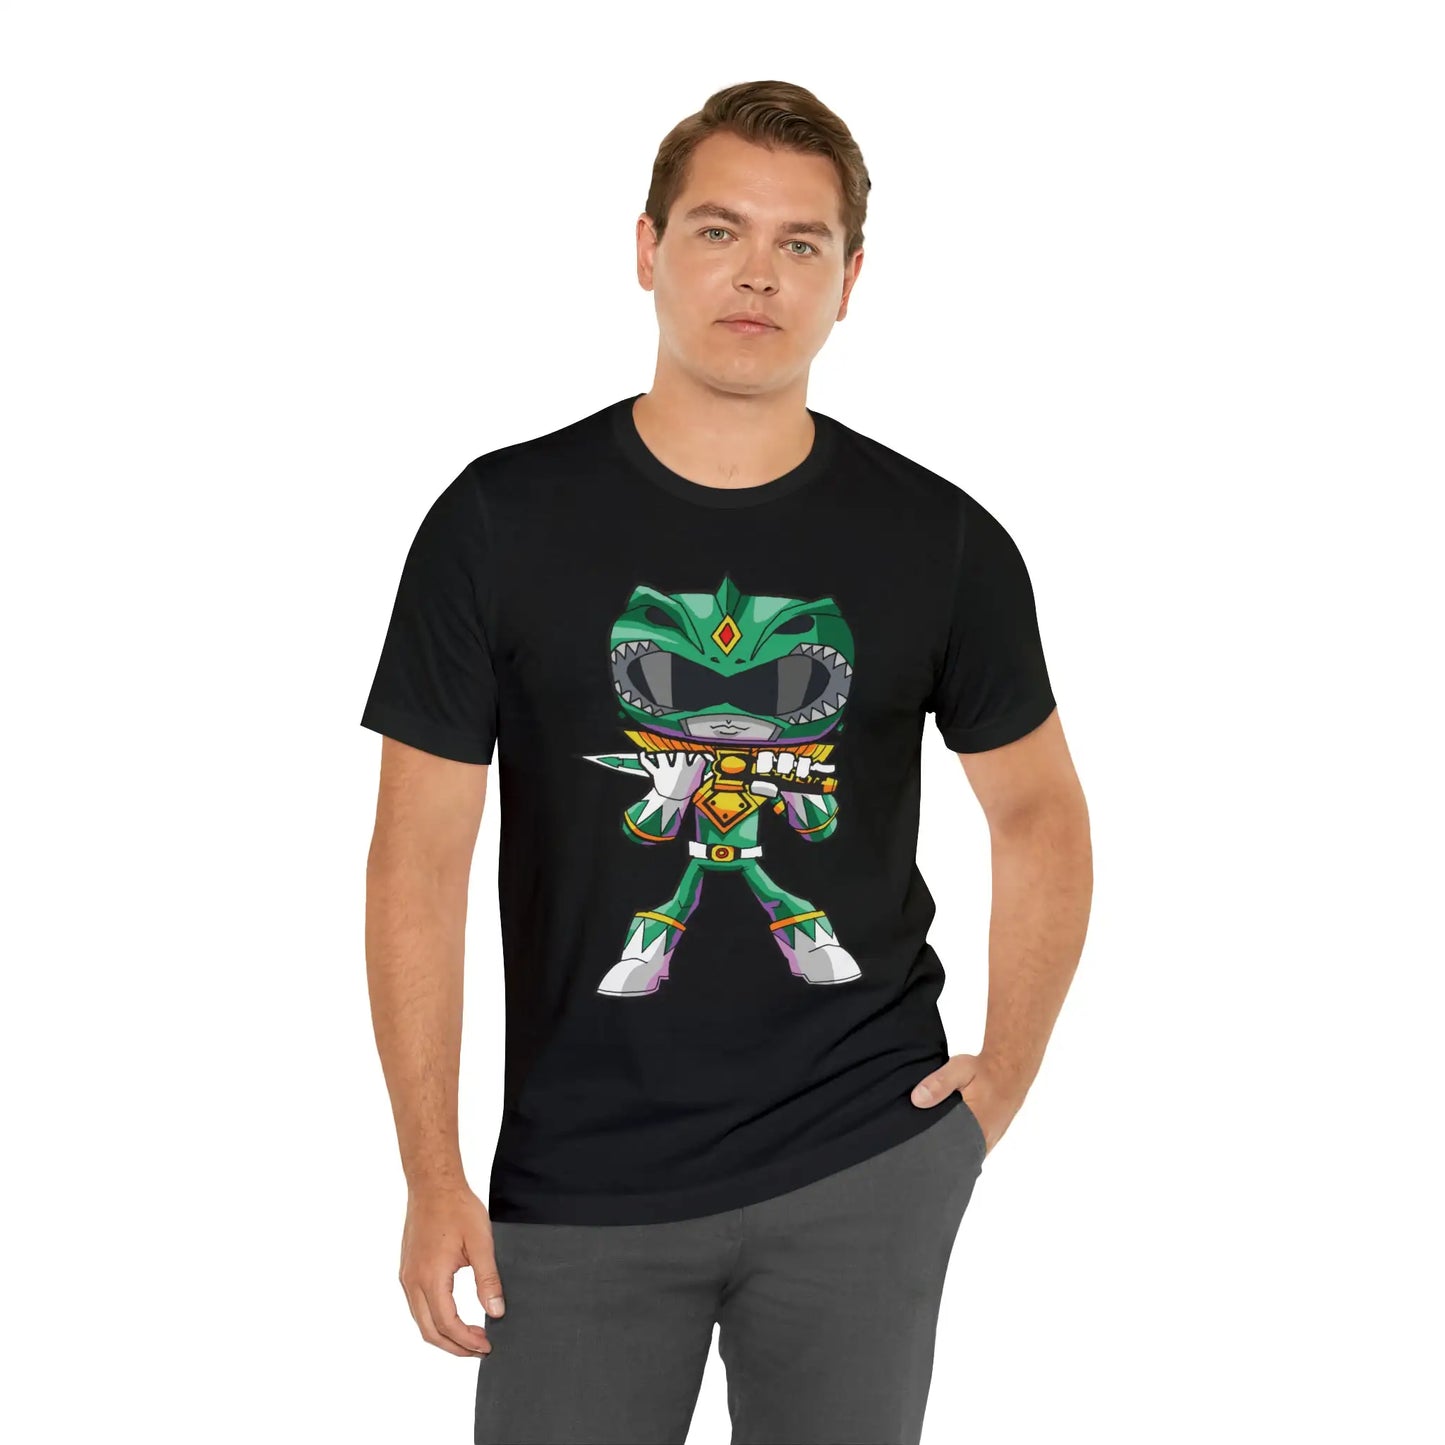 Green Ranger Power Rangers T-Shirt Cartoon Parody Tee Unisex For Men and Women